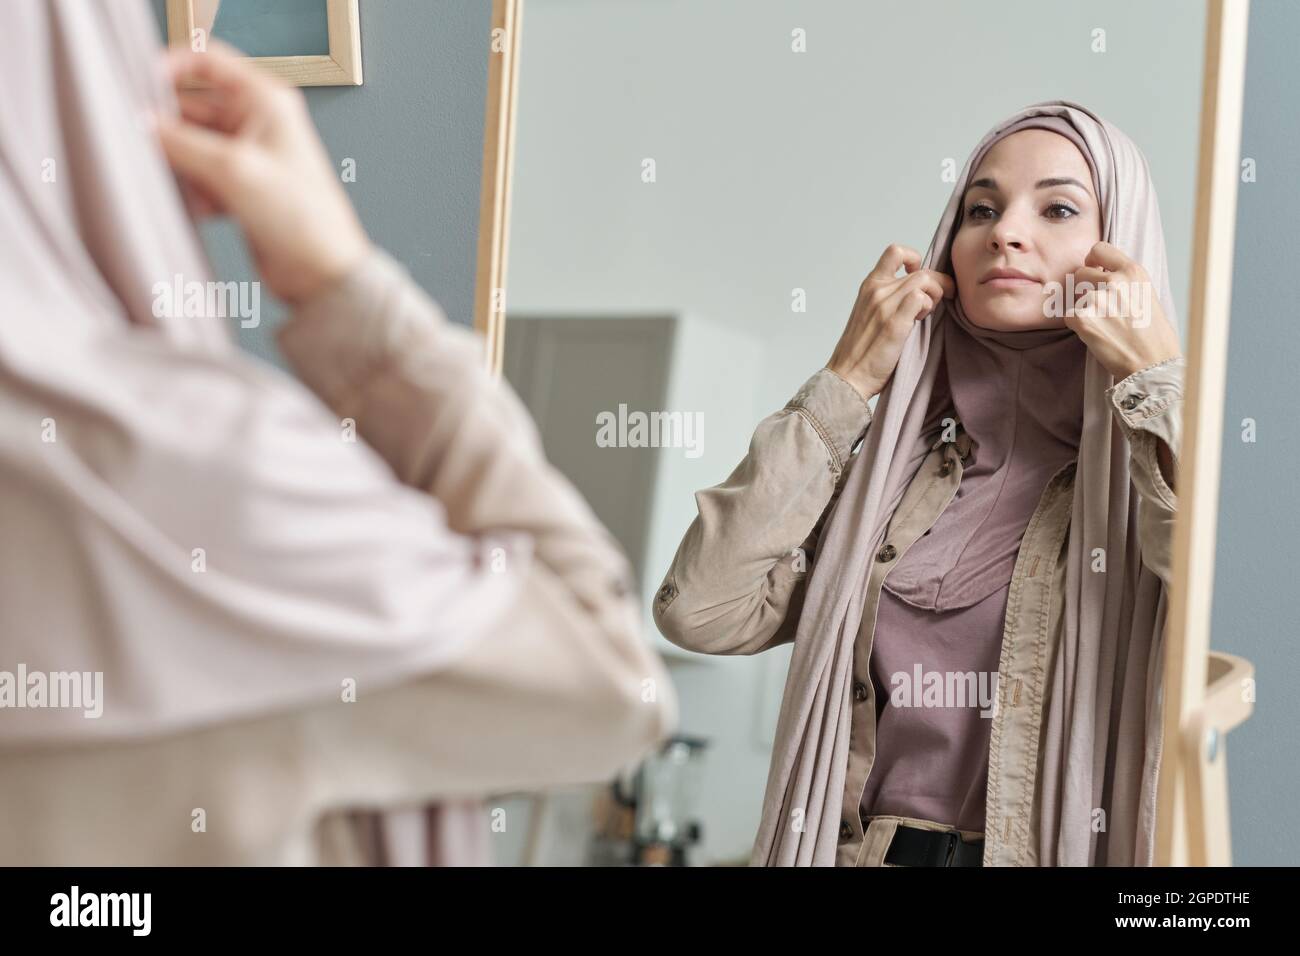 Scatto orizzontale sopra la spalla di attraente giovane donna musulmana adulta che si prepara ad uscire mettendo su hijab davanti allo specchio Foto Stock